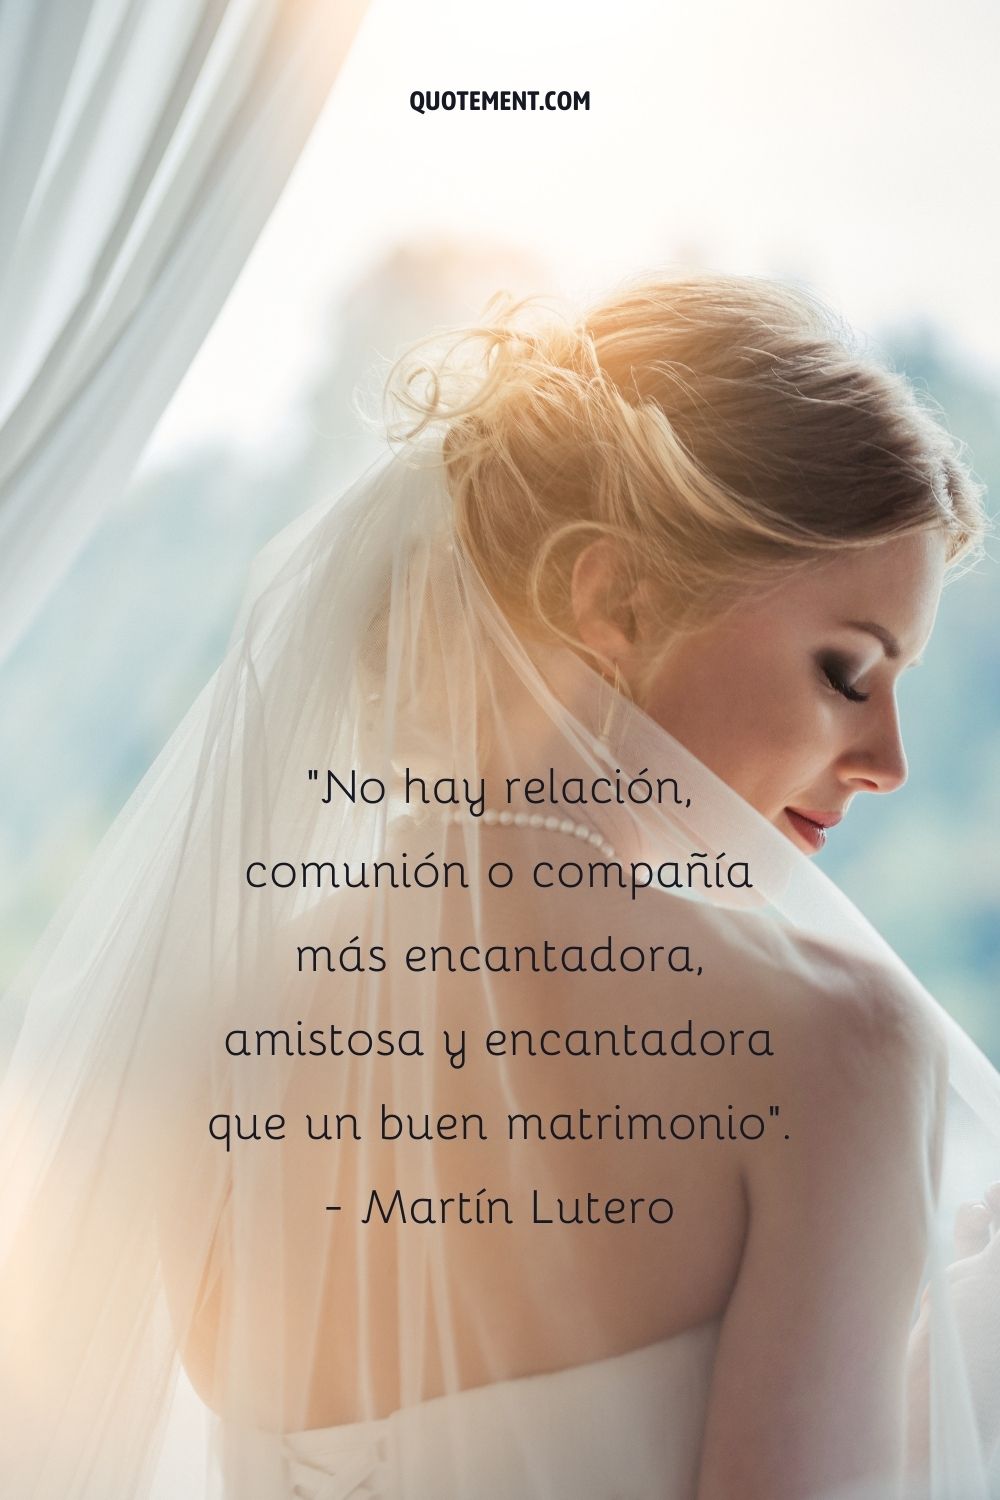 No hay relación, comunión o compañía más hermosa, amistosa y encantadora que un buen matrimonio. - Martín Lutero